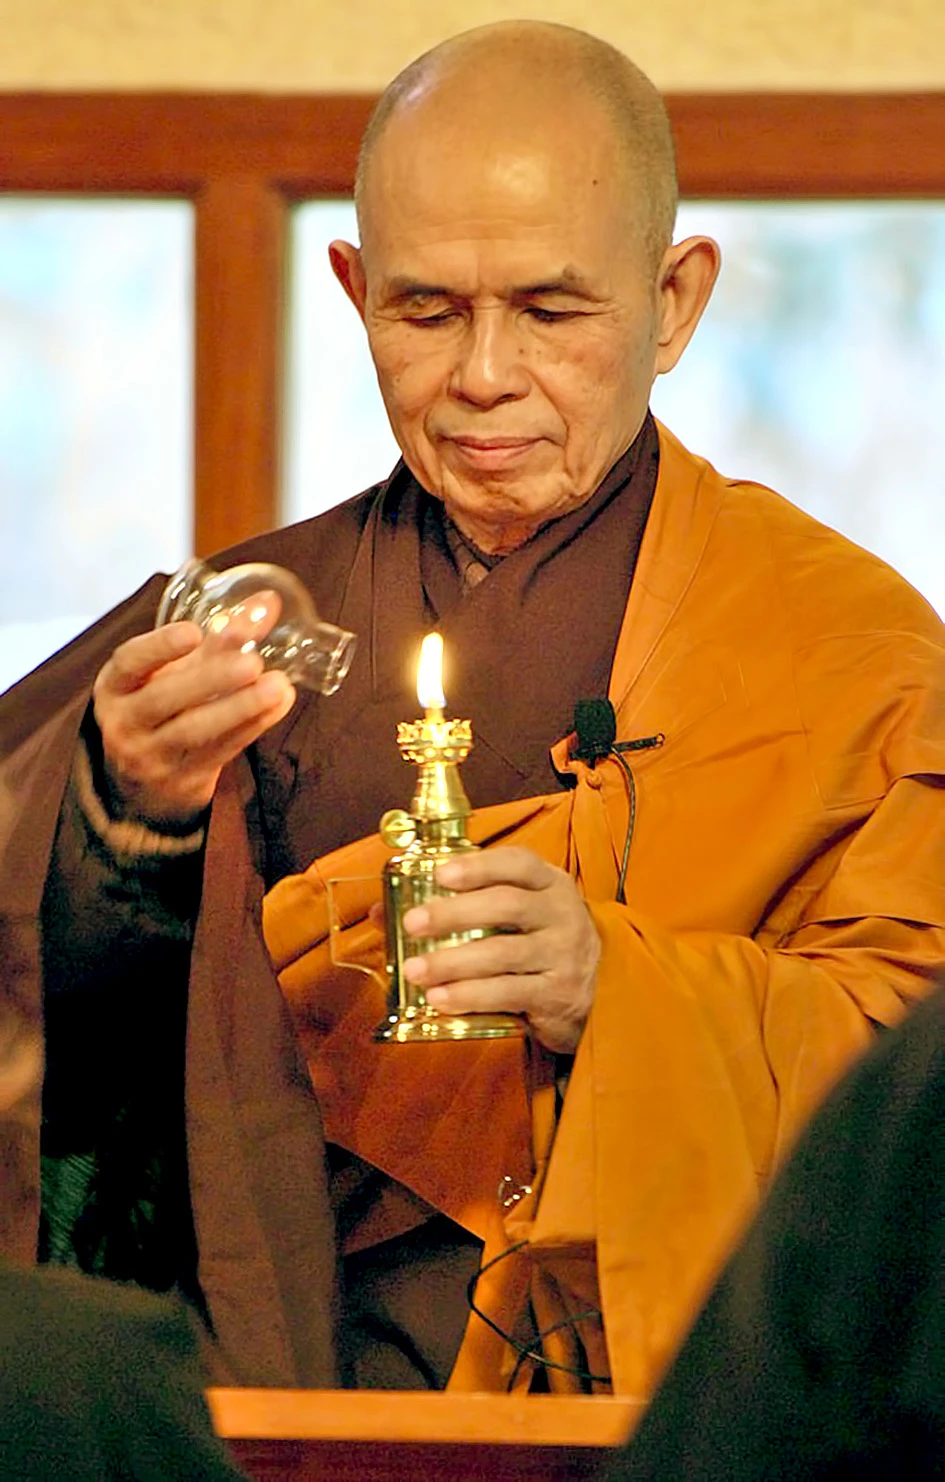 Thiền sư Thích Nhất Hạnh: Khởi xướng con đường Phật giáo dấn thân